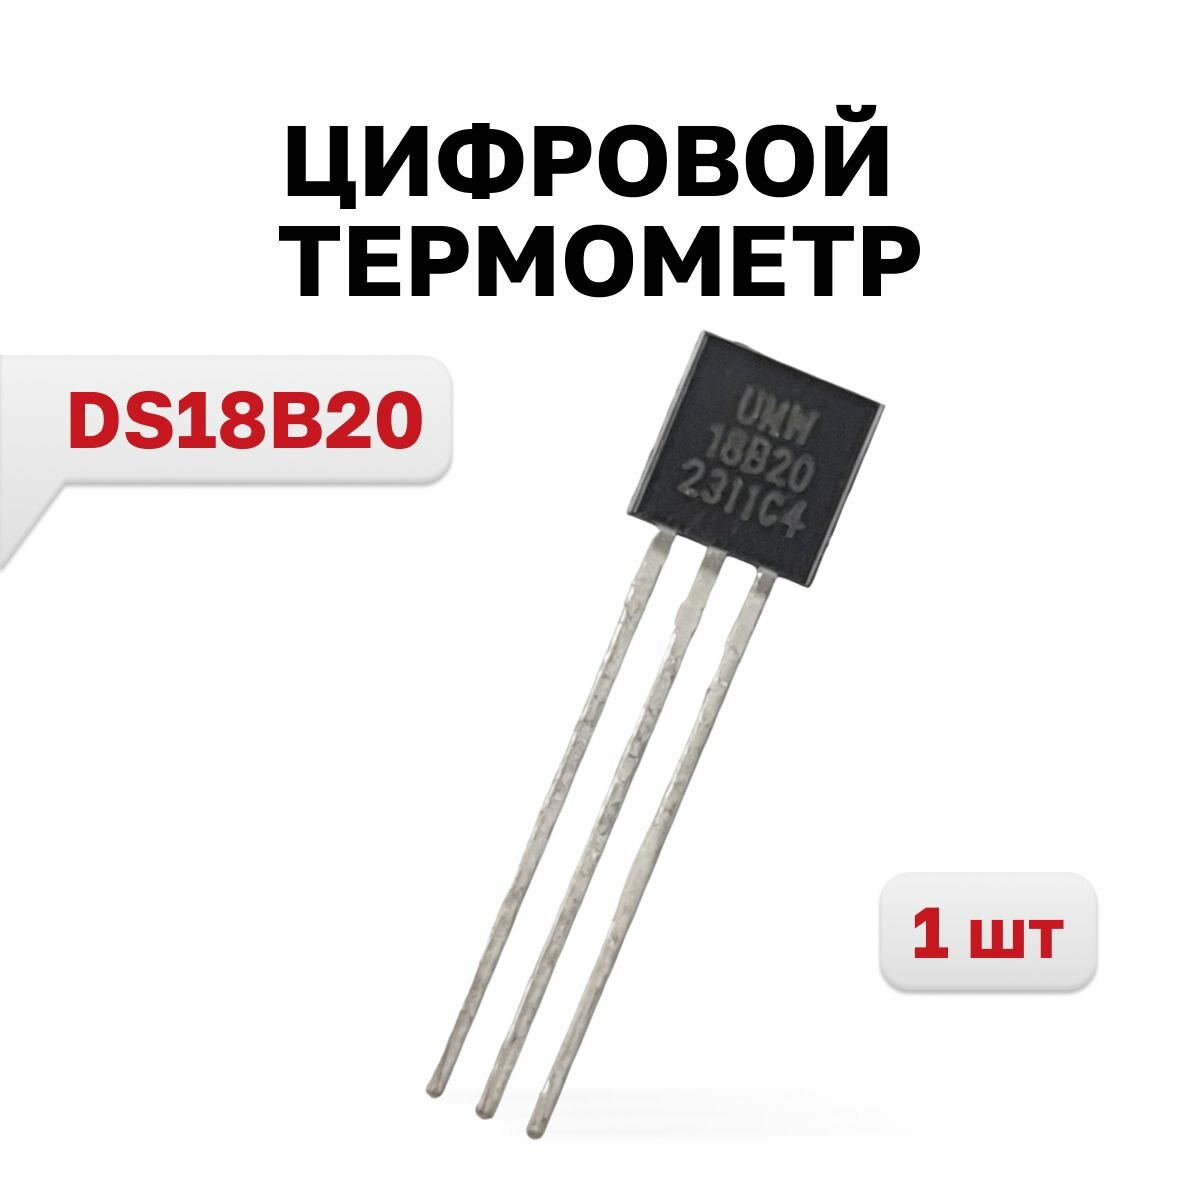 DS18B20, Цифровой термометр (Youtai Semiconductor), 1 шт.